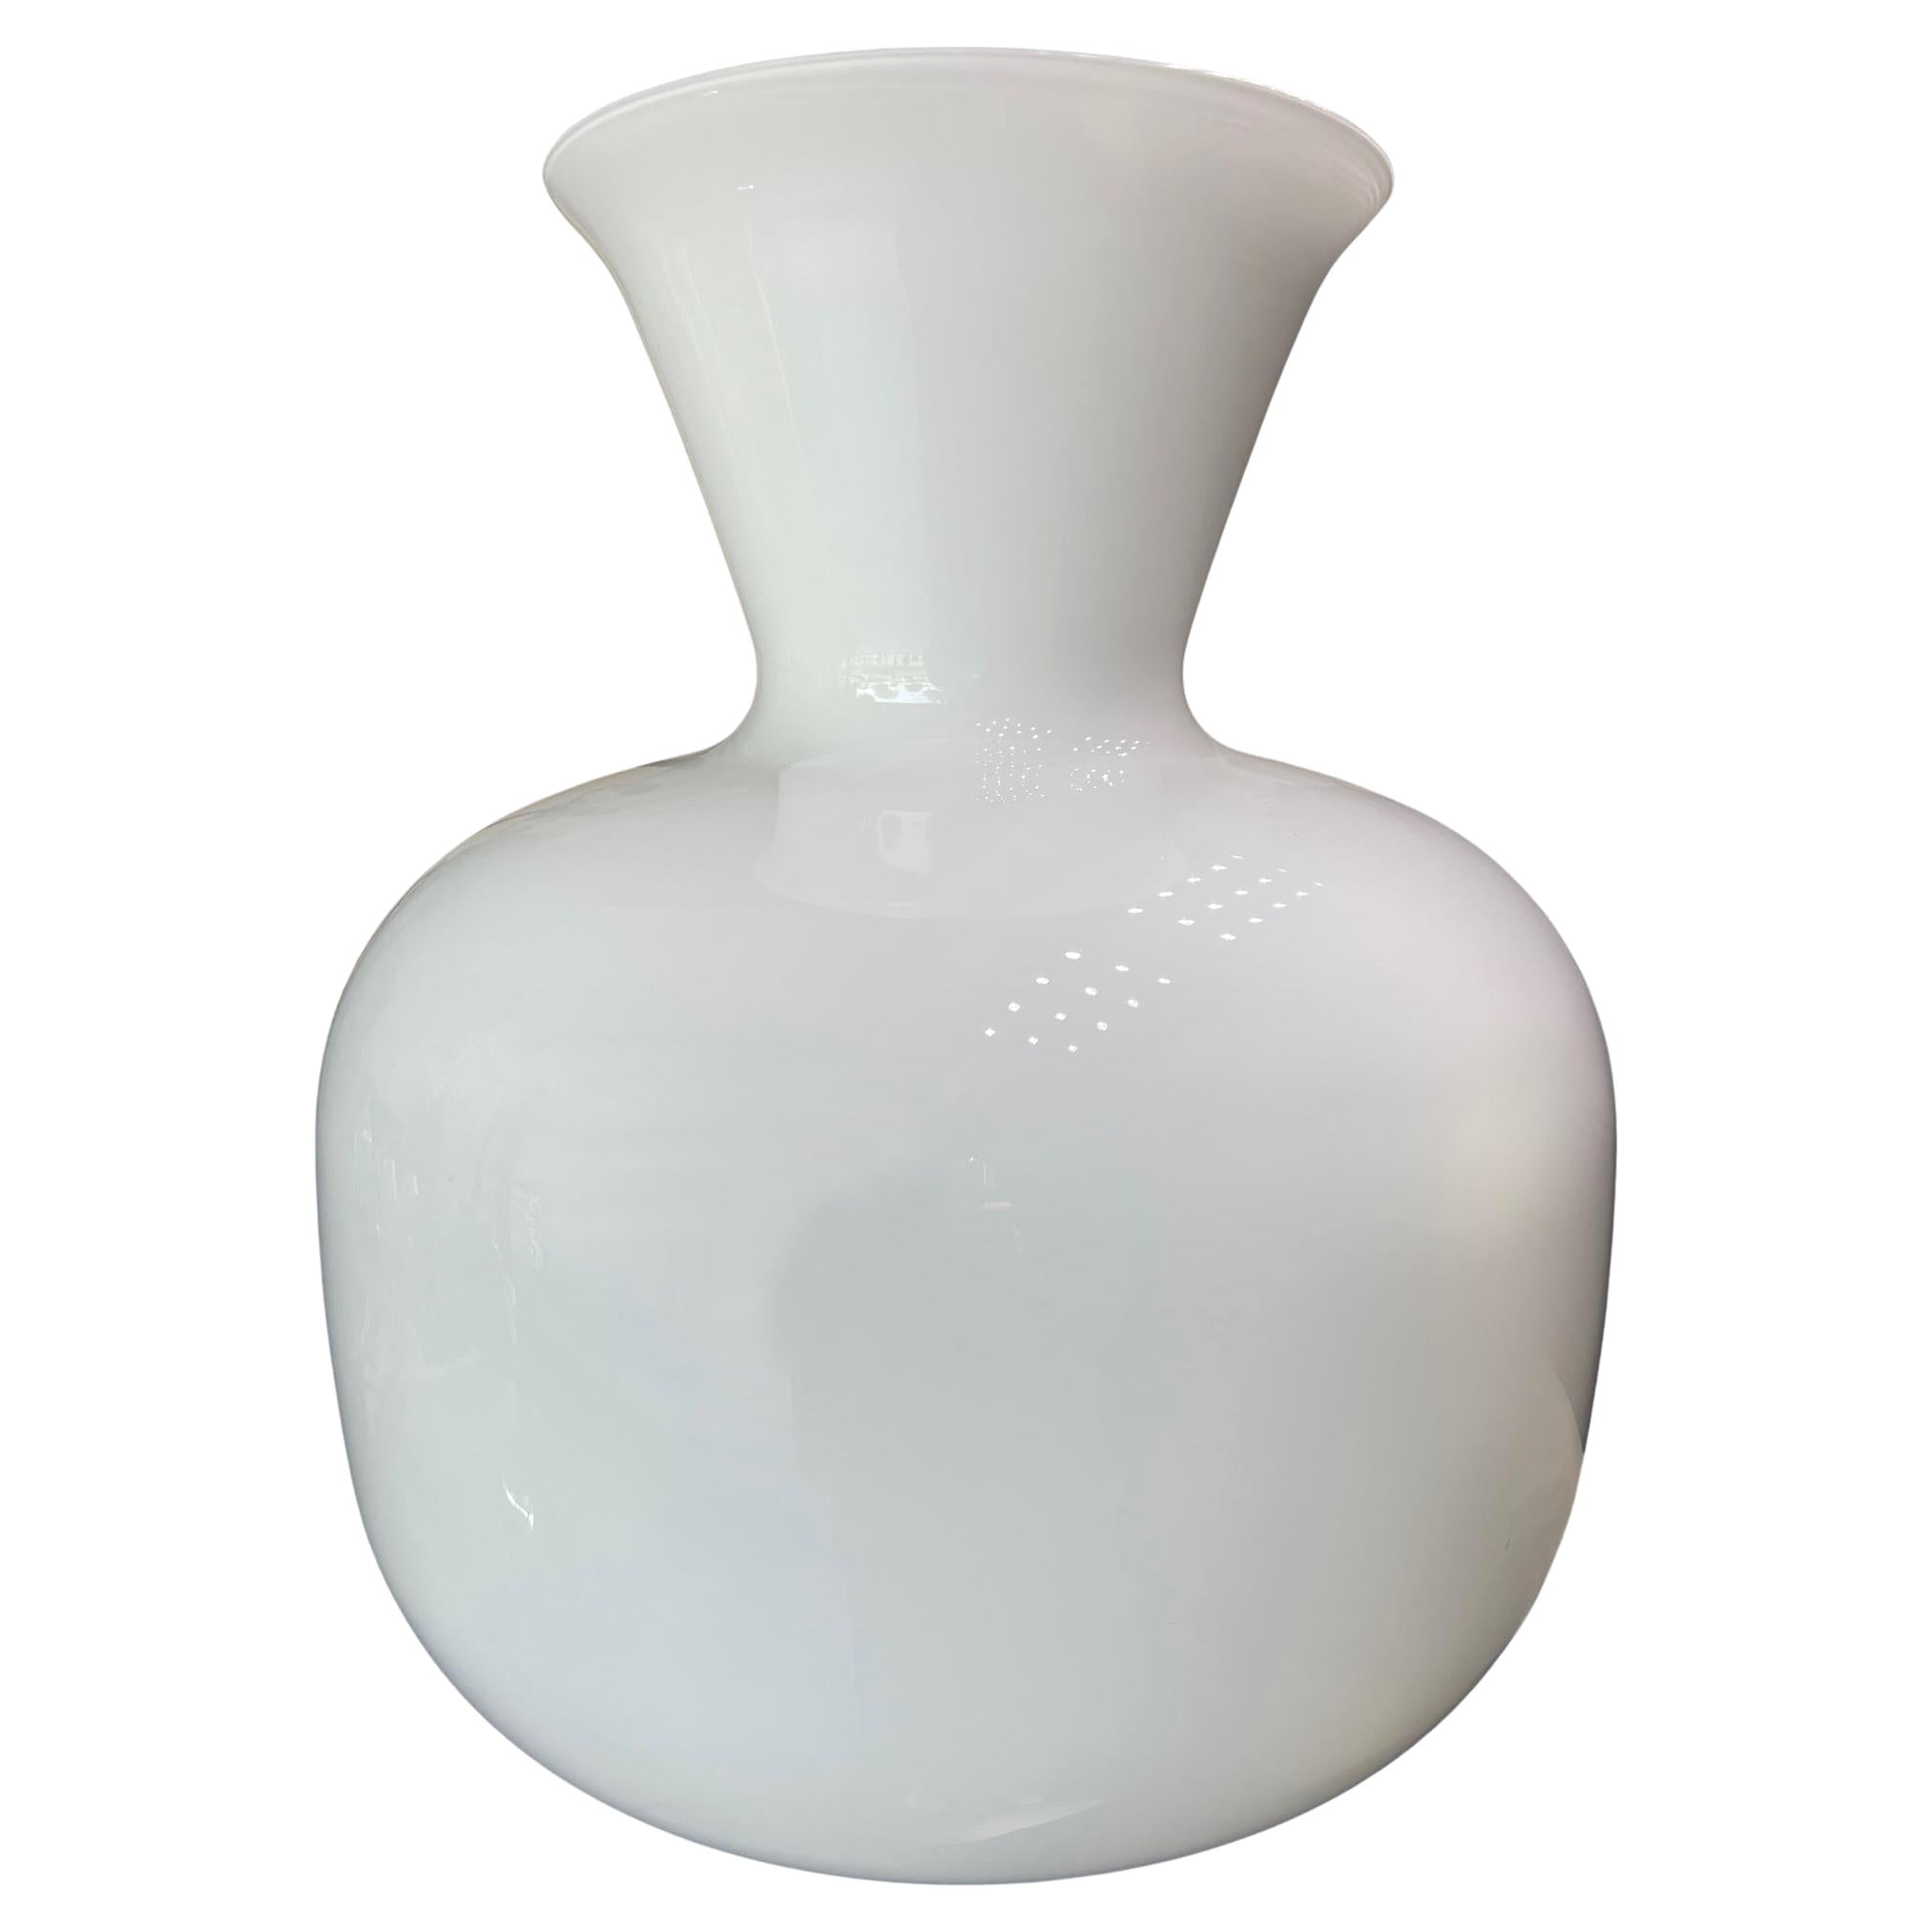 1295 Murano Hand Blown White Murano Glass Design Big For Sale